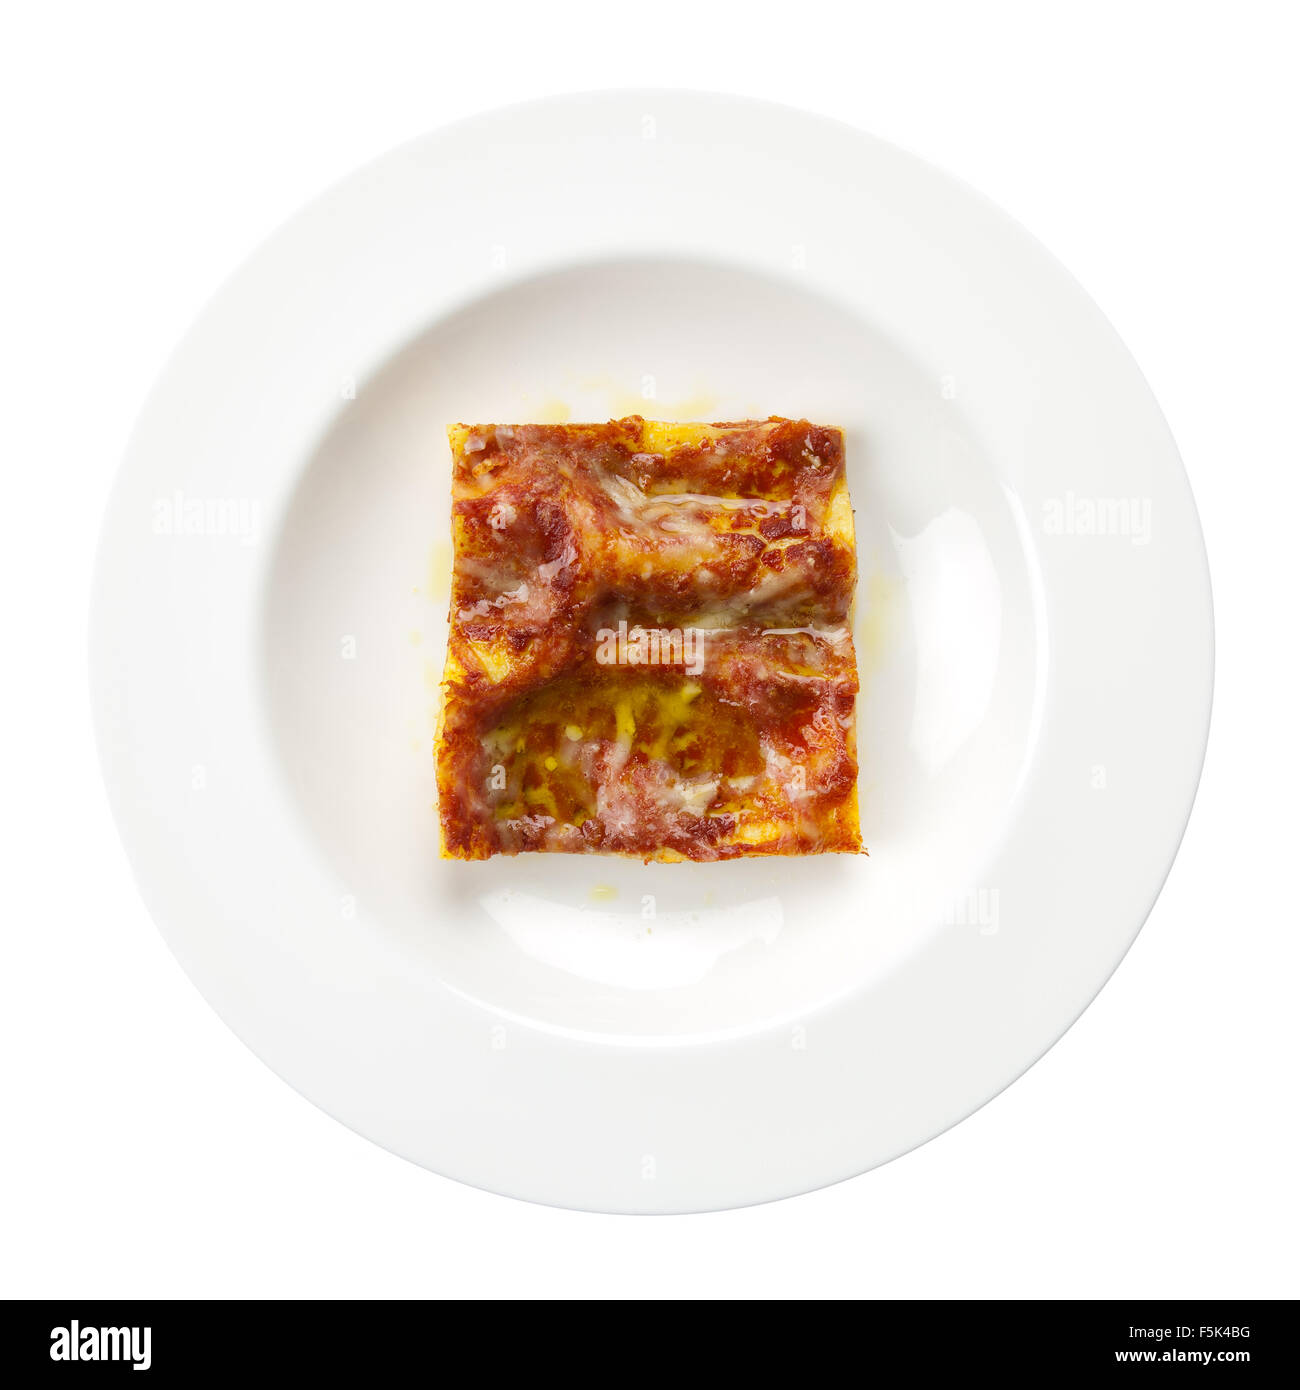 Lasagne Alla Bolognese traditionellen italienischen Rezept mit Fleisch, Tomaten, Parmesan-Käse, Olivenöl, Lasagne Nudeln Stockfoto